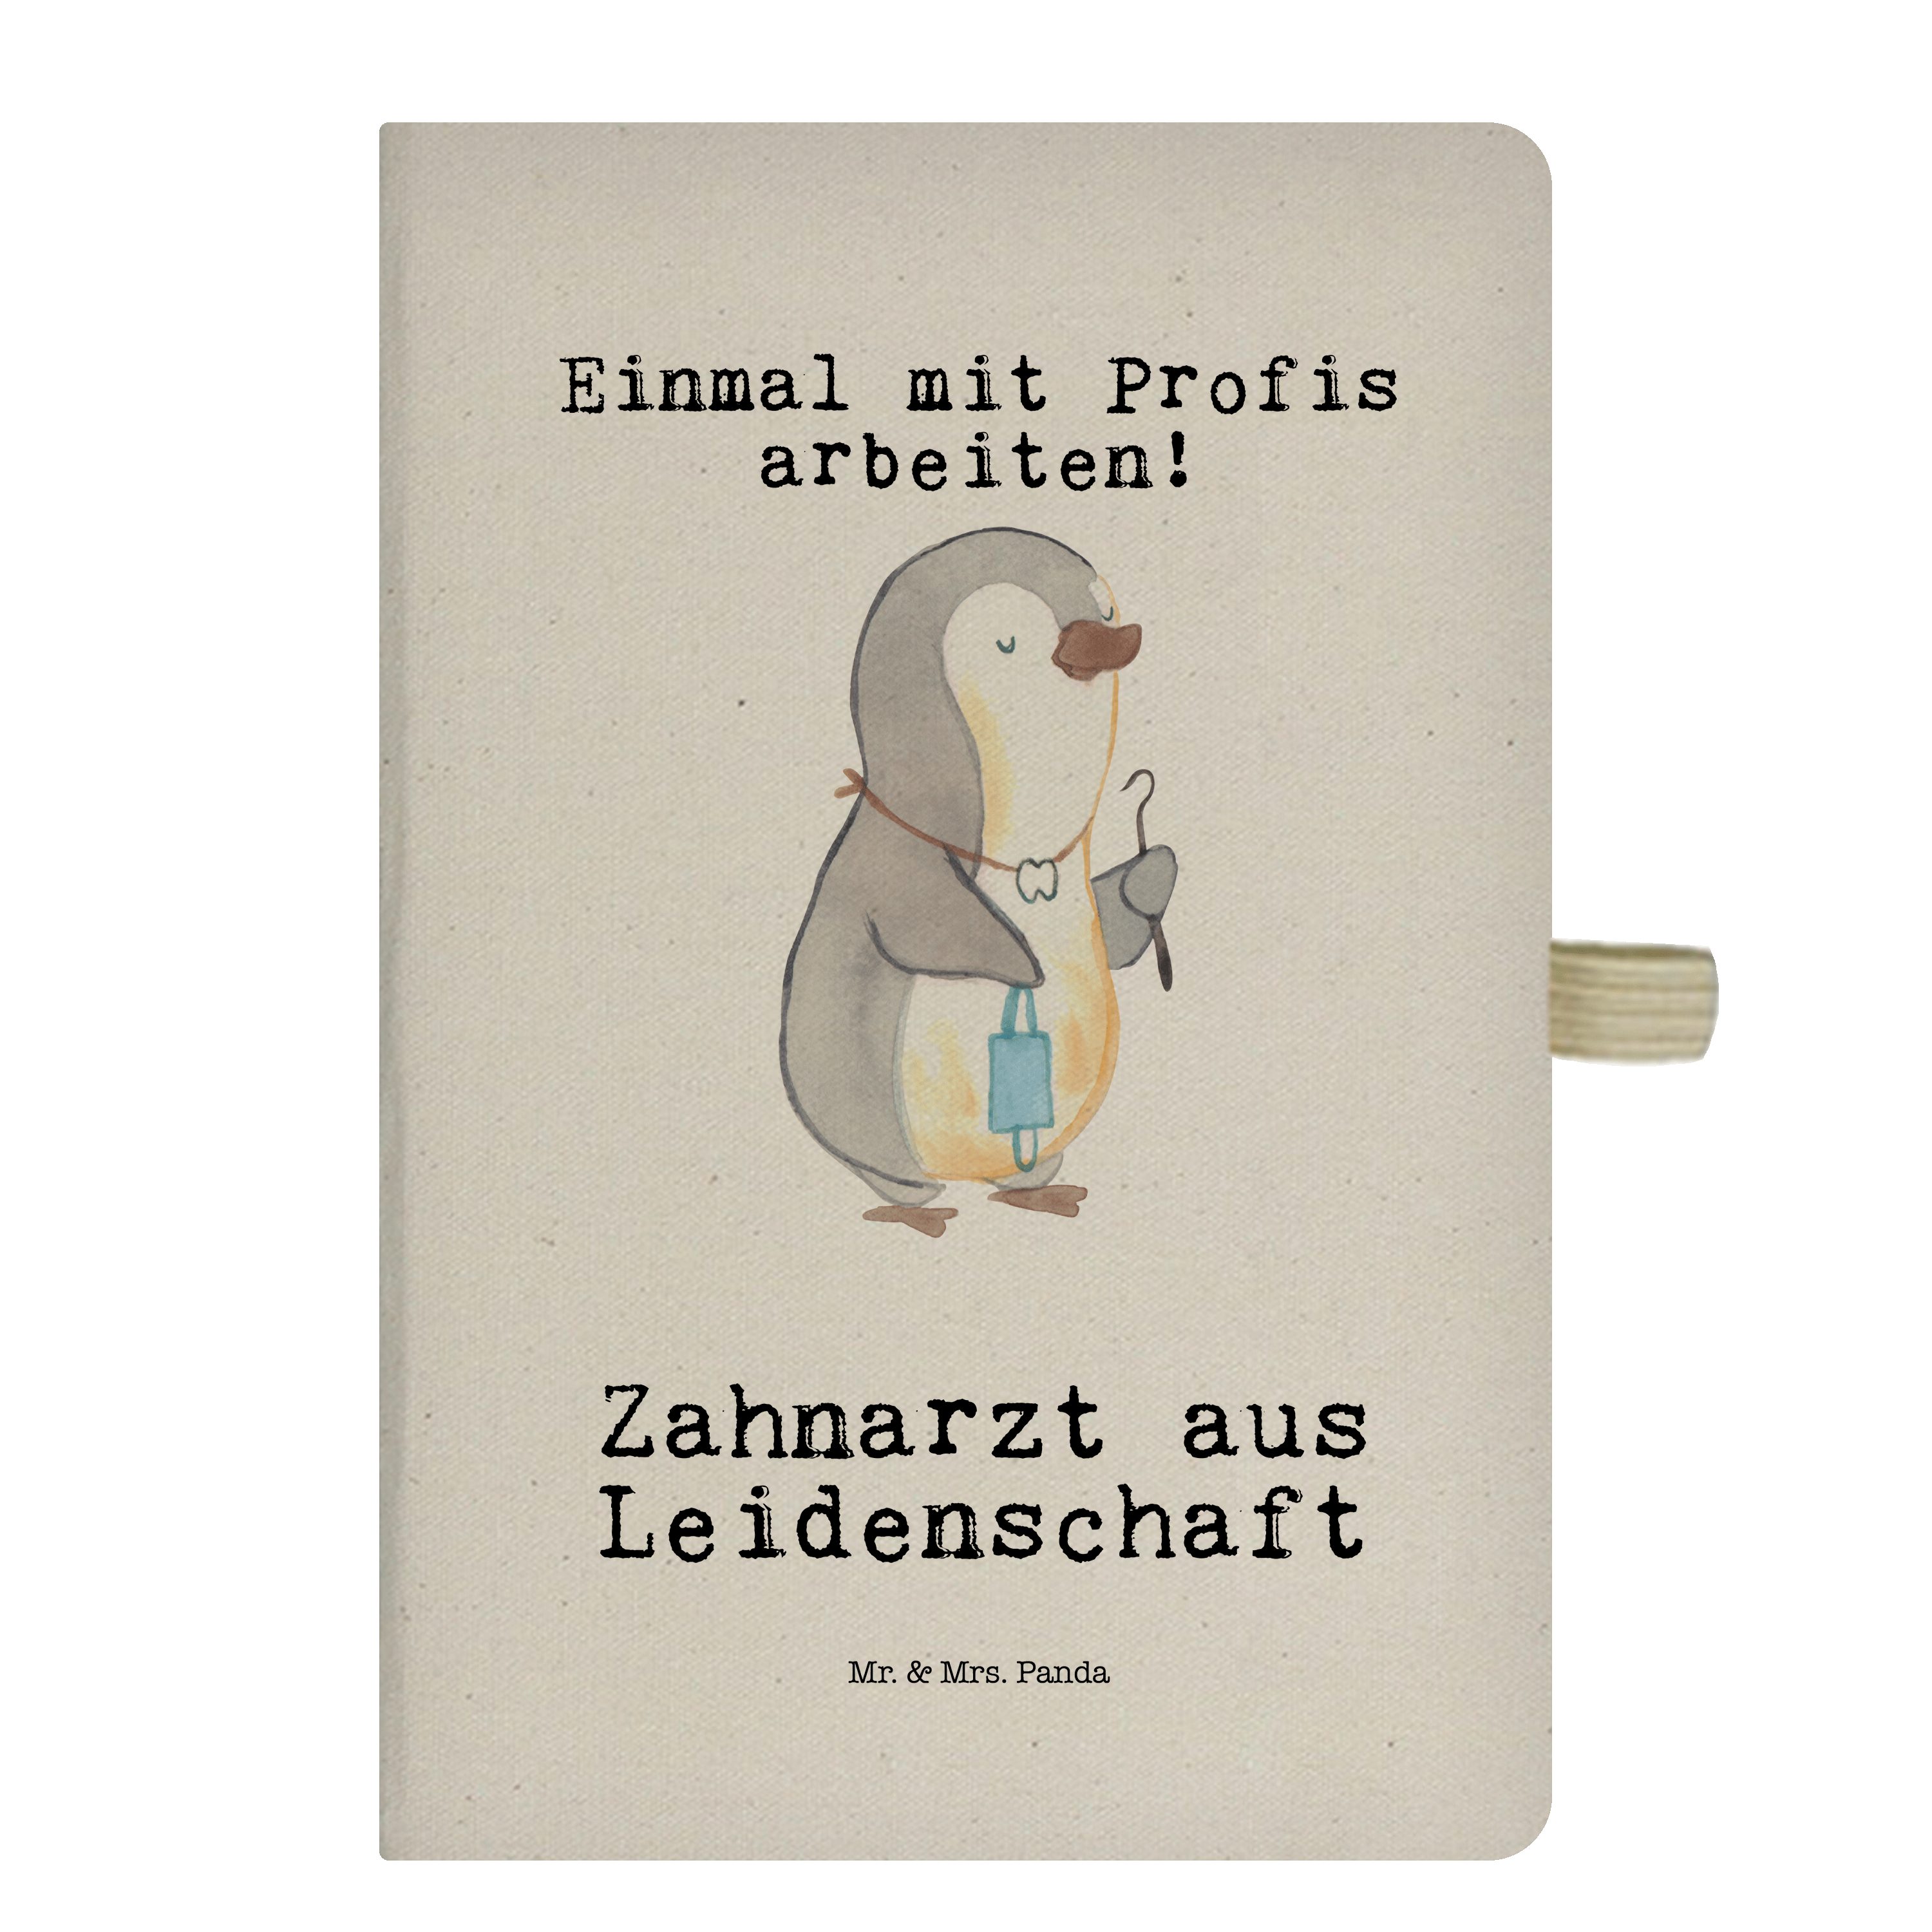 Mrs. Notiz Geschenk, Transparent Panda - Mr. & Zahnarzt Notizbuch Leidenschaft - Mrs. & Mr. Panda aus Dankeschön,